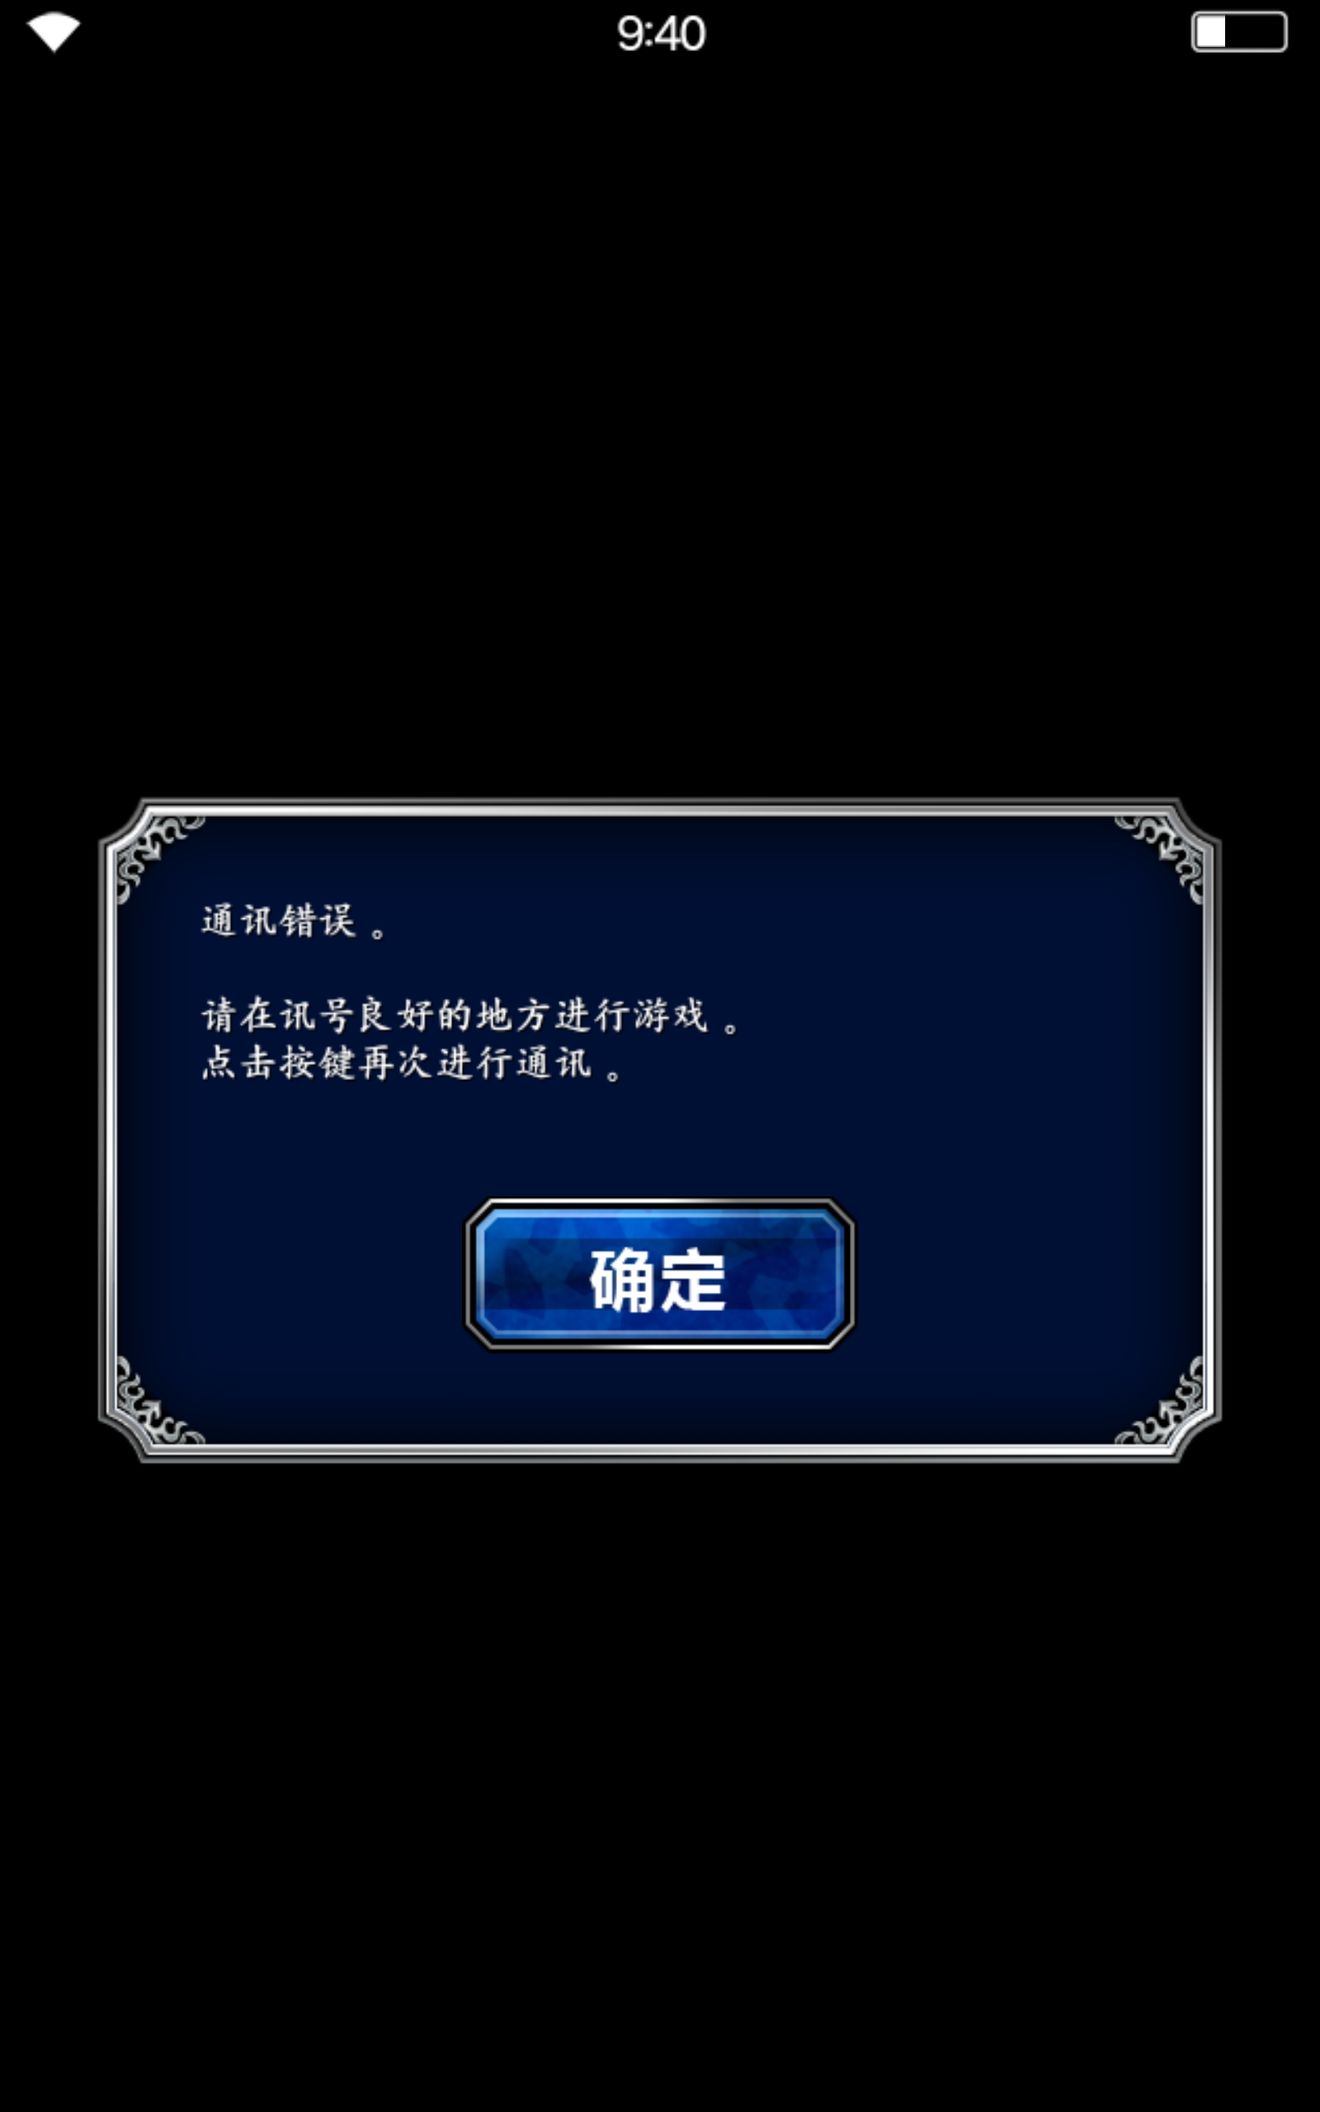 最终幻想勇气启示录礼包兑换码怎么领取 礼包码无法领取BUG问题